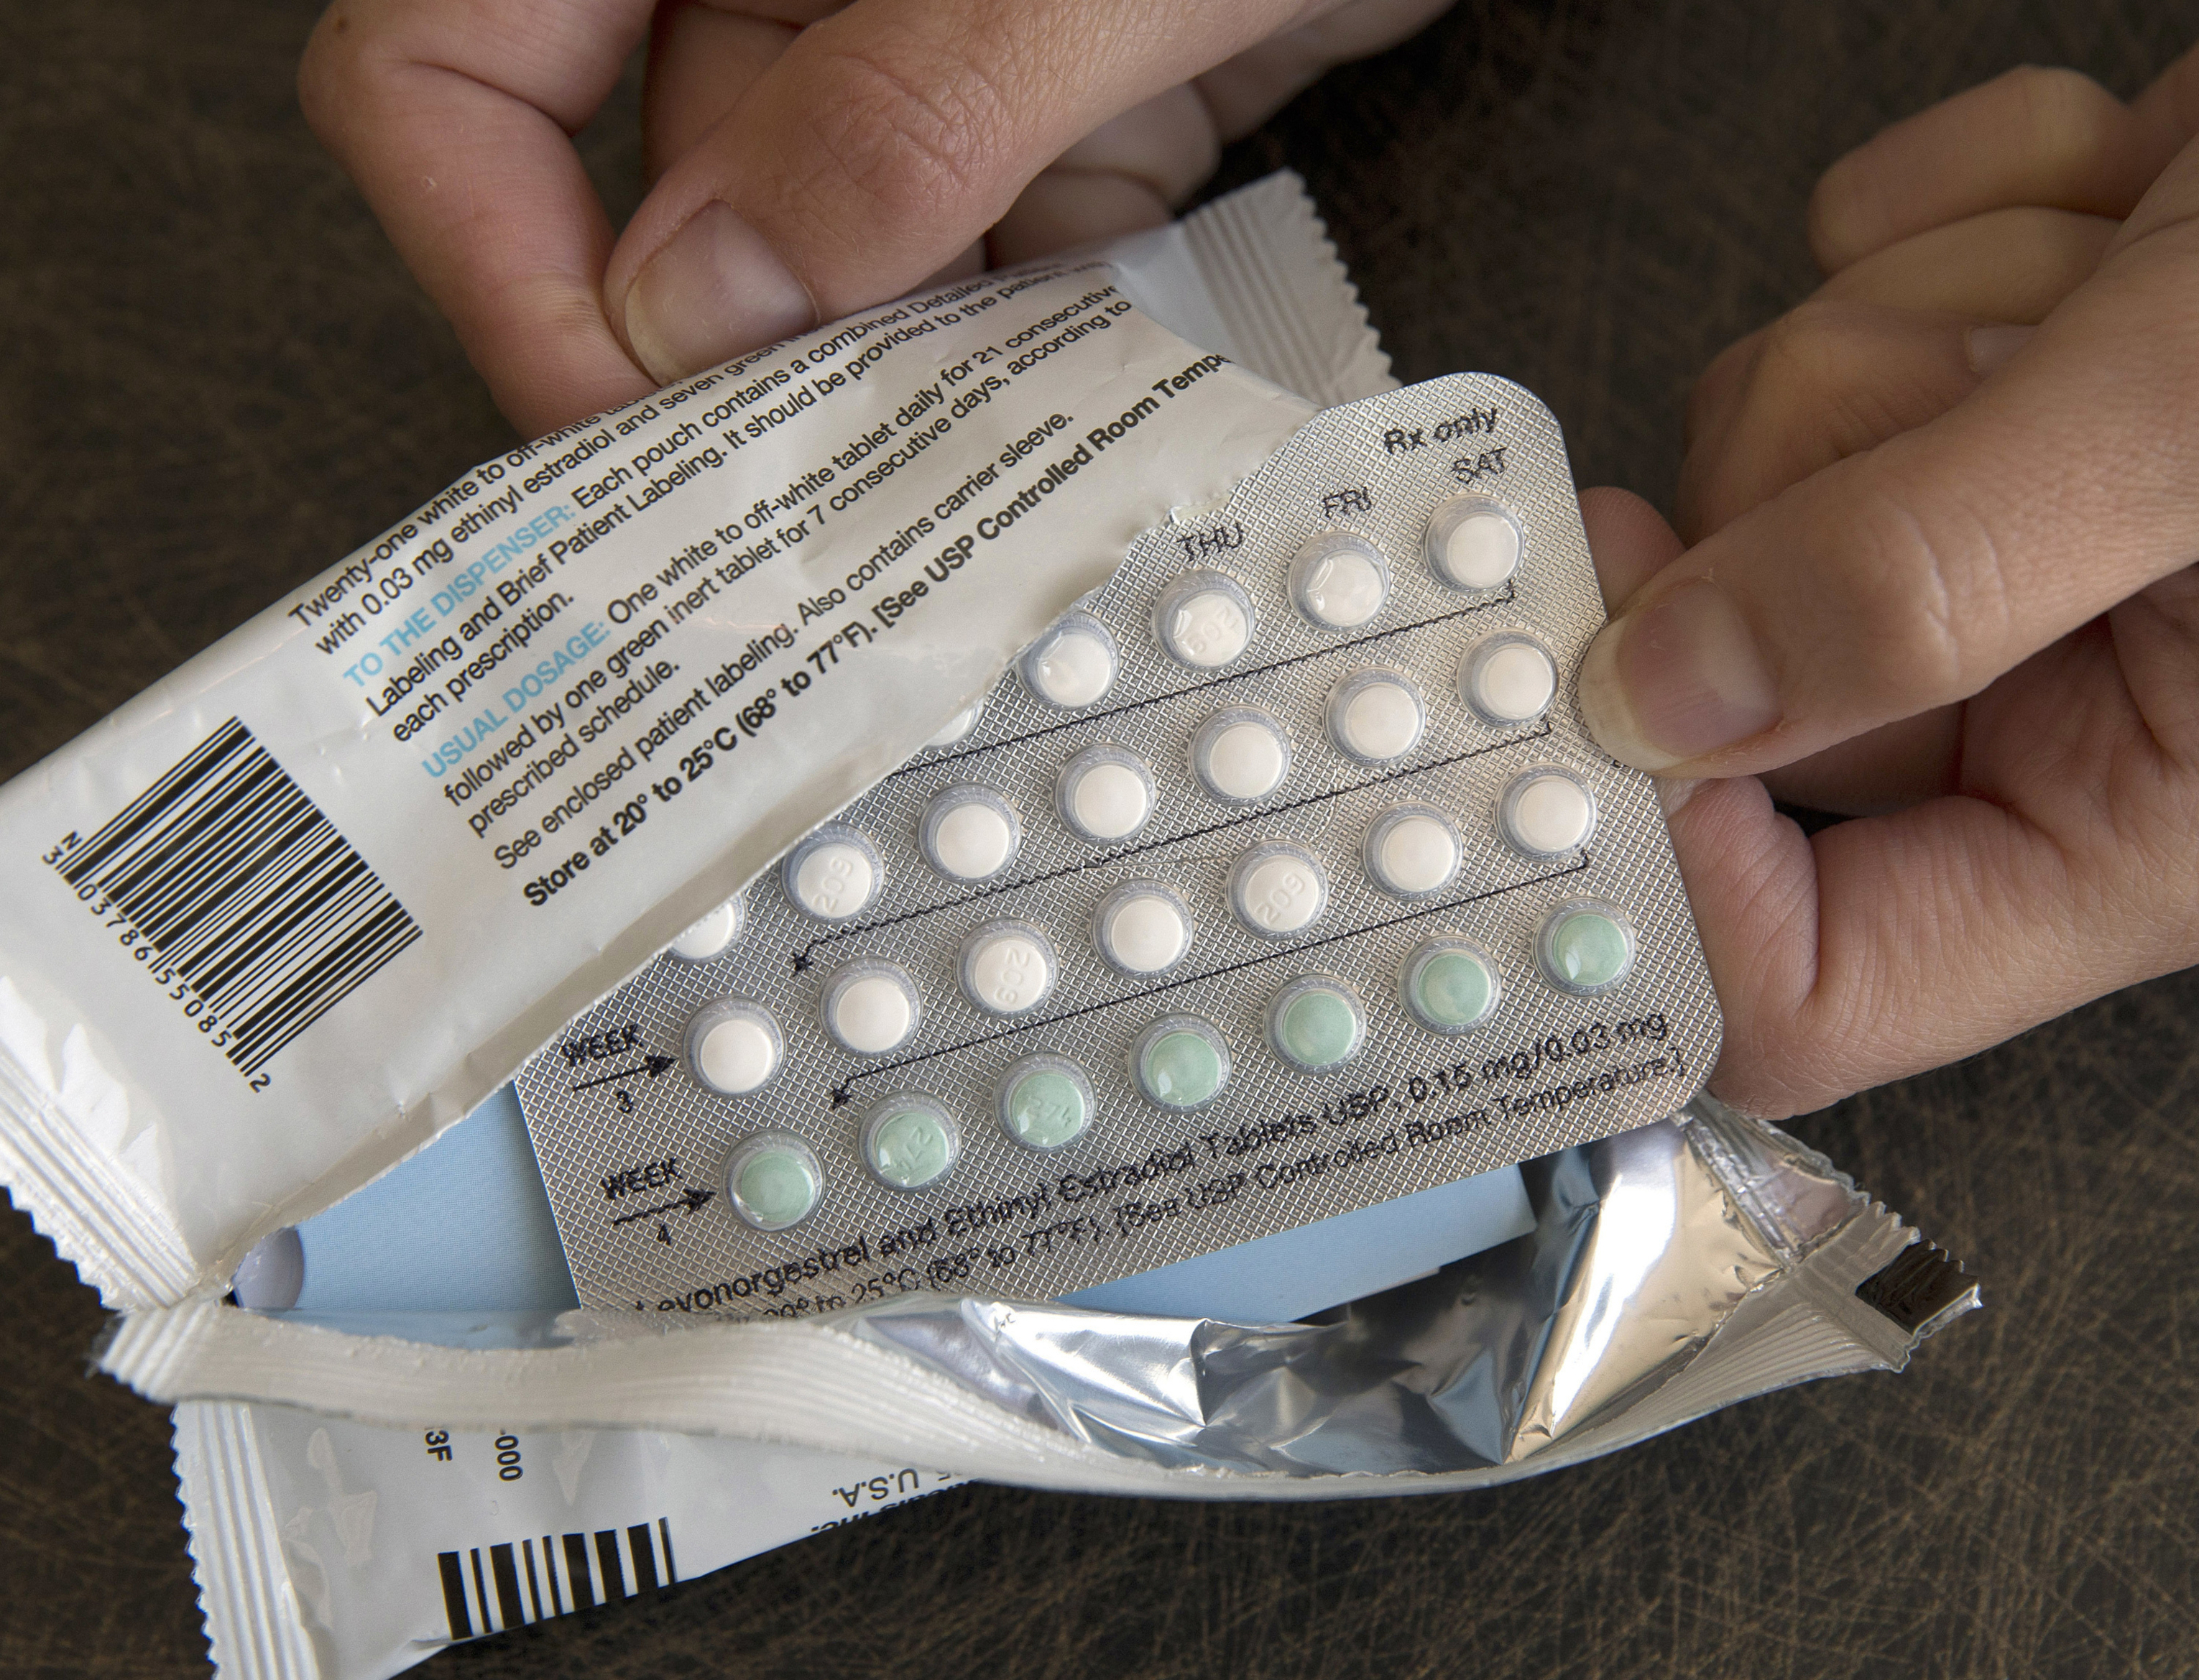 Arriba 71+ imagen puedo comprar las pastillas anticonceptivas sin receta